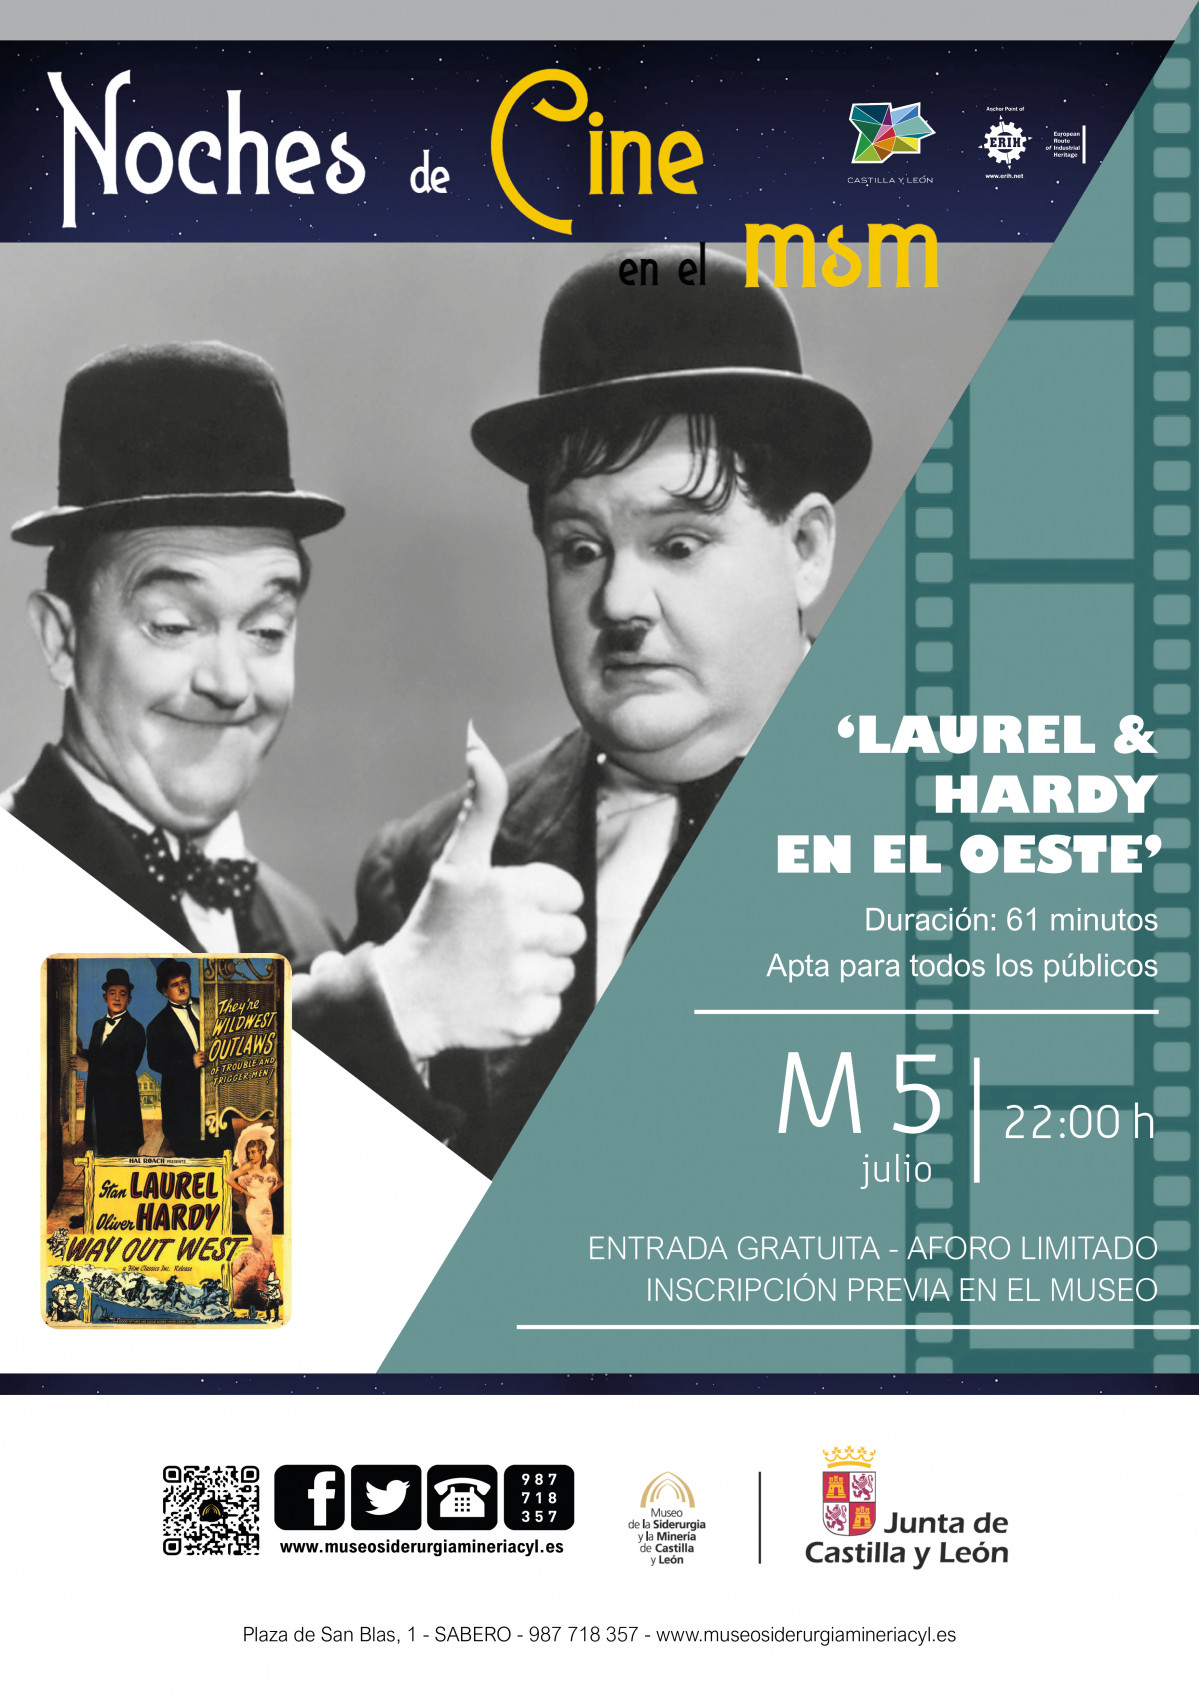 Noches de cine. Laurel y Hardy en el oeste